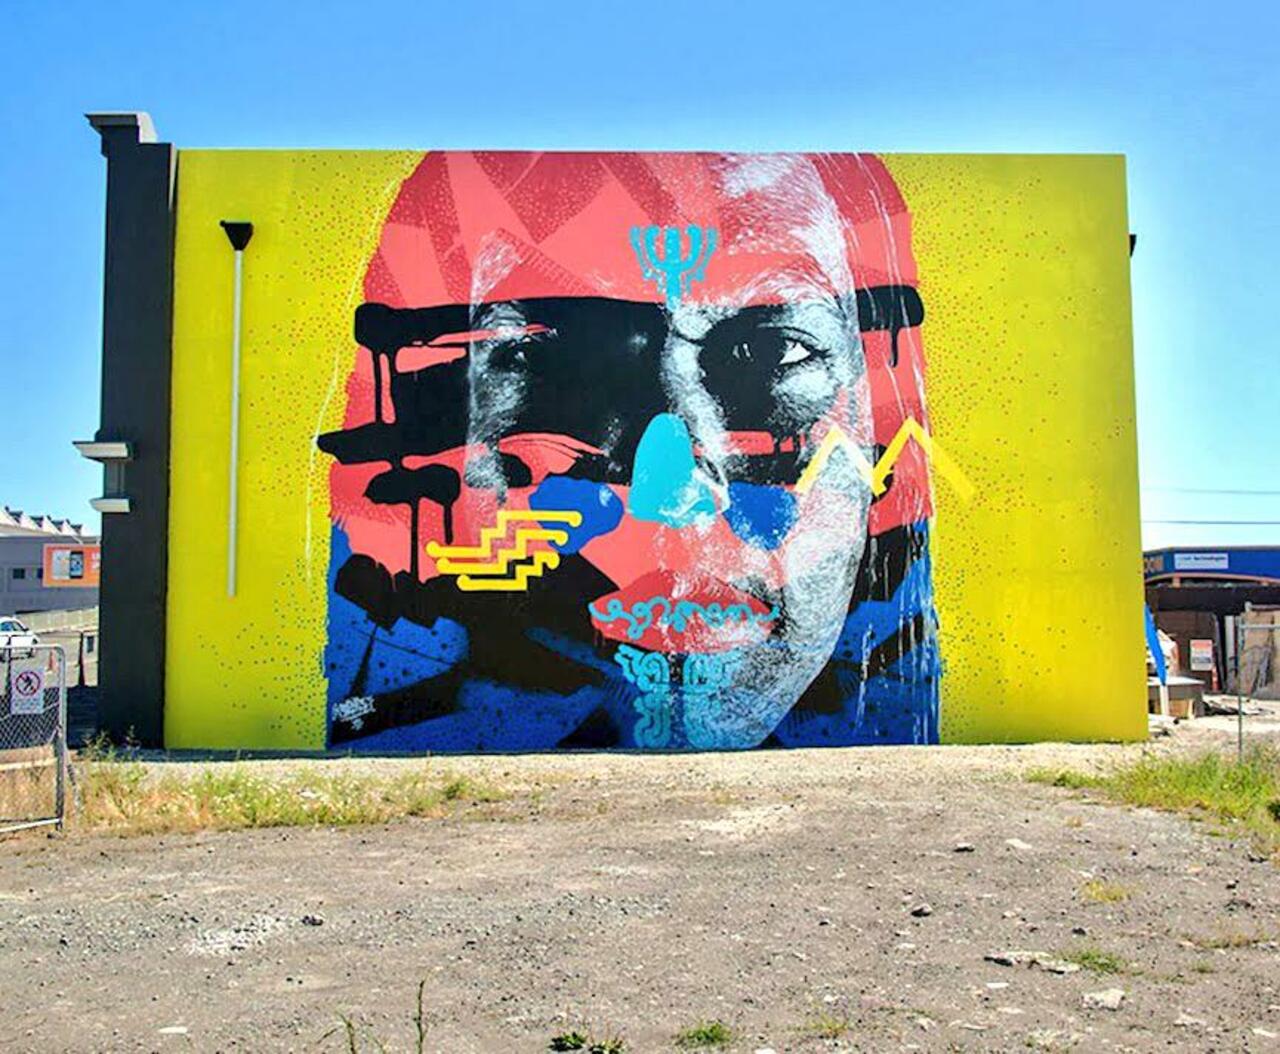 Askew
Christchurch, New Zealand
#streetart #art #Graffiti #mural http://t.co/TtvTzwl6qh